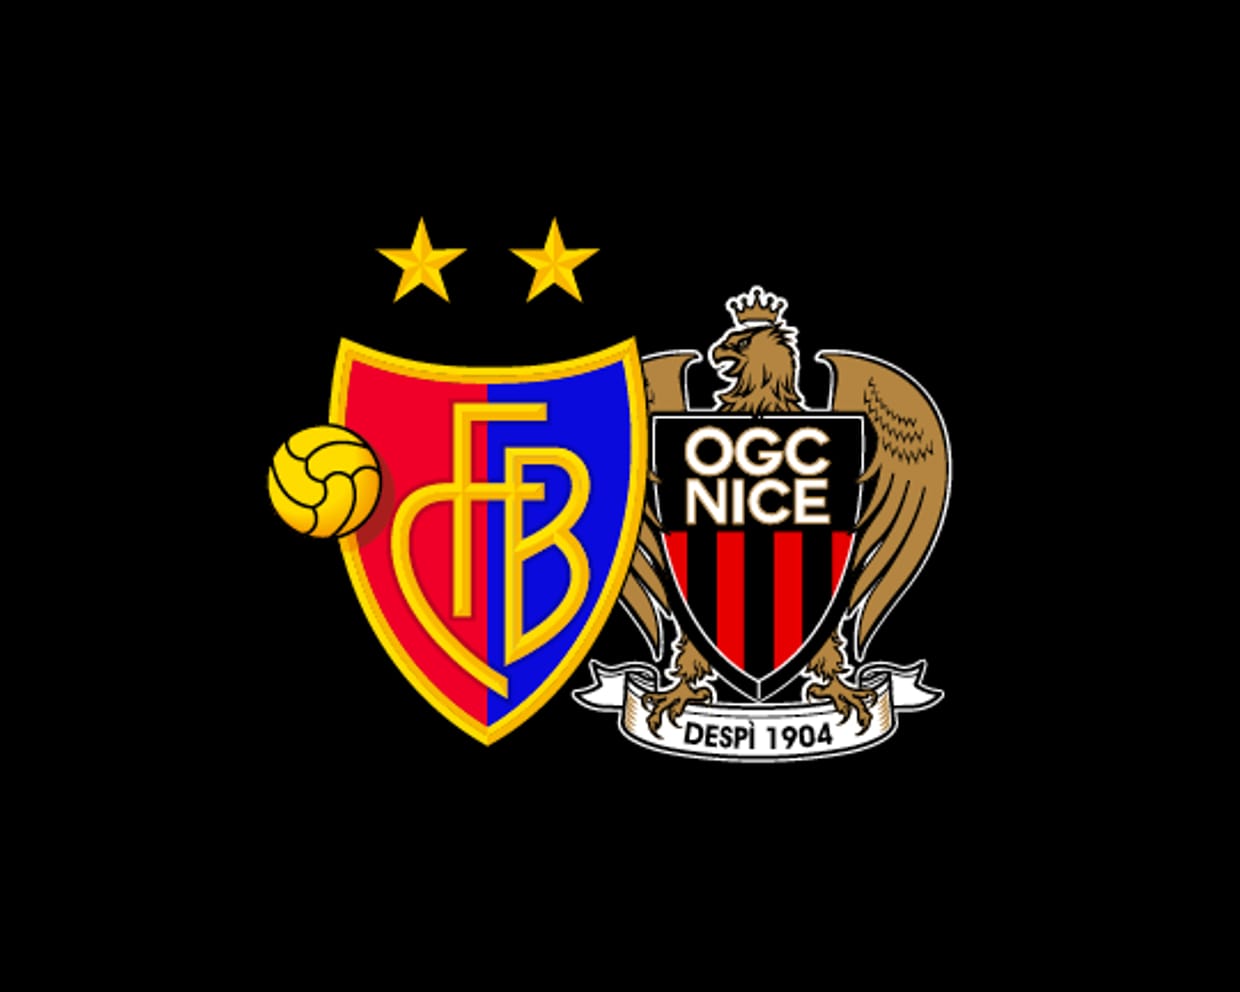 FCB - OGC Nice